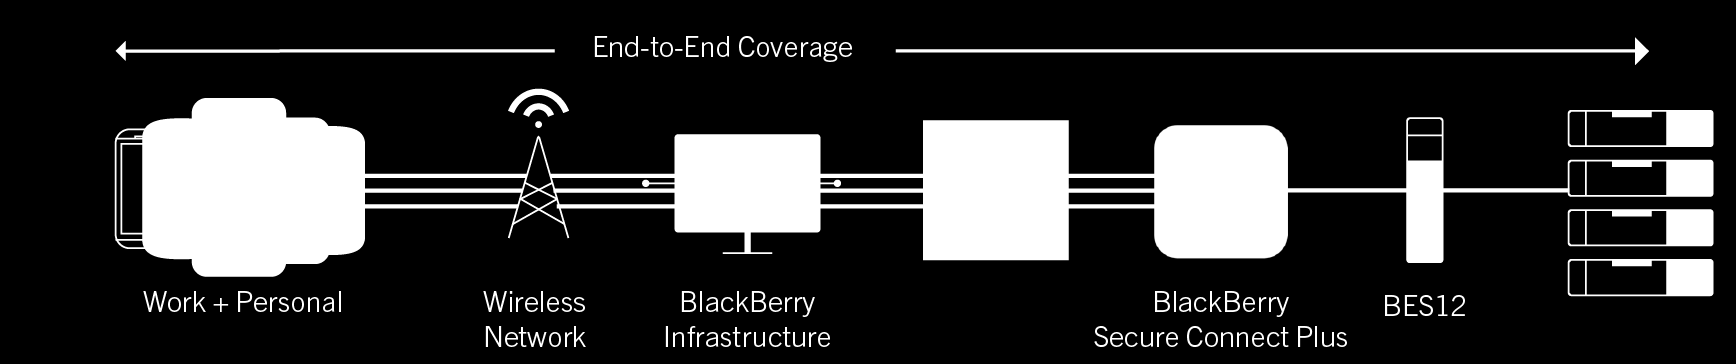 8. BEWÄHRTES BLACKBERRY NETZWERK Datenverkehr wird über einen einzigen Port geroutet, kein VPN erforderlich.